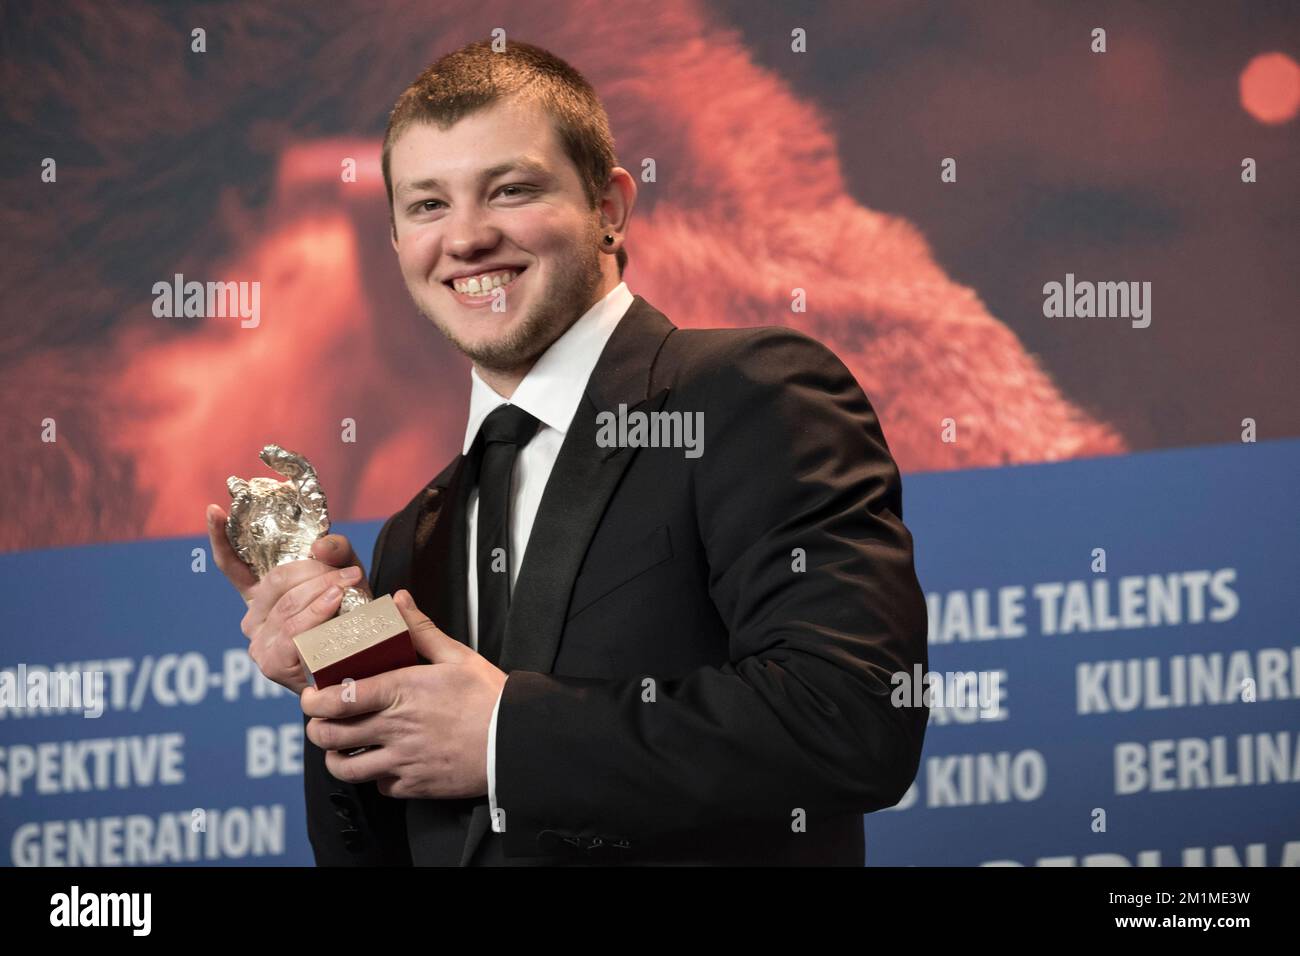 Anthony Bajon mit einem silbernen Baeren - Pressekonferenz mit den Preistraegern, Berlinale 2018, 24. Februar 2018, Berlin. Stock Photo